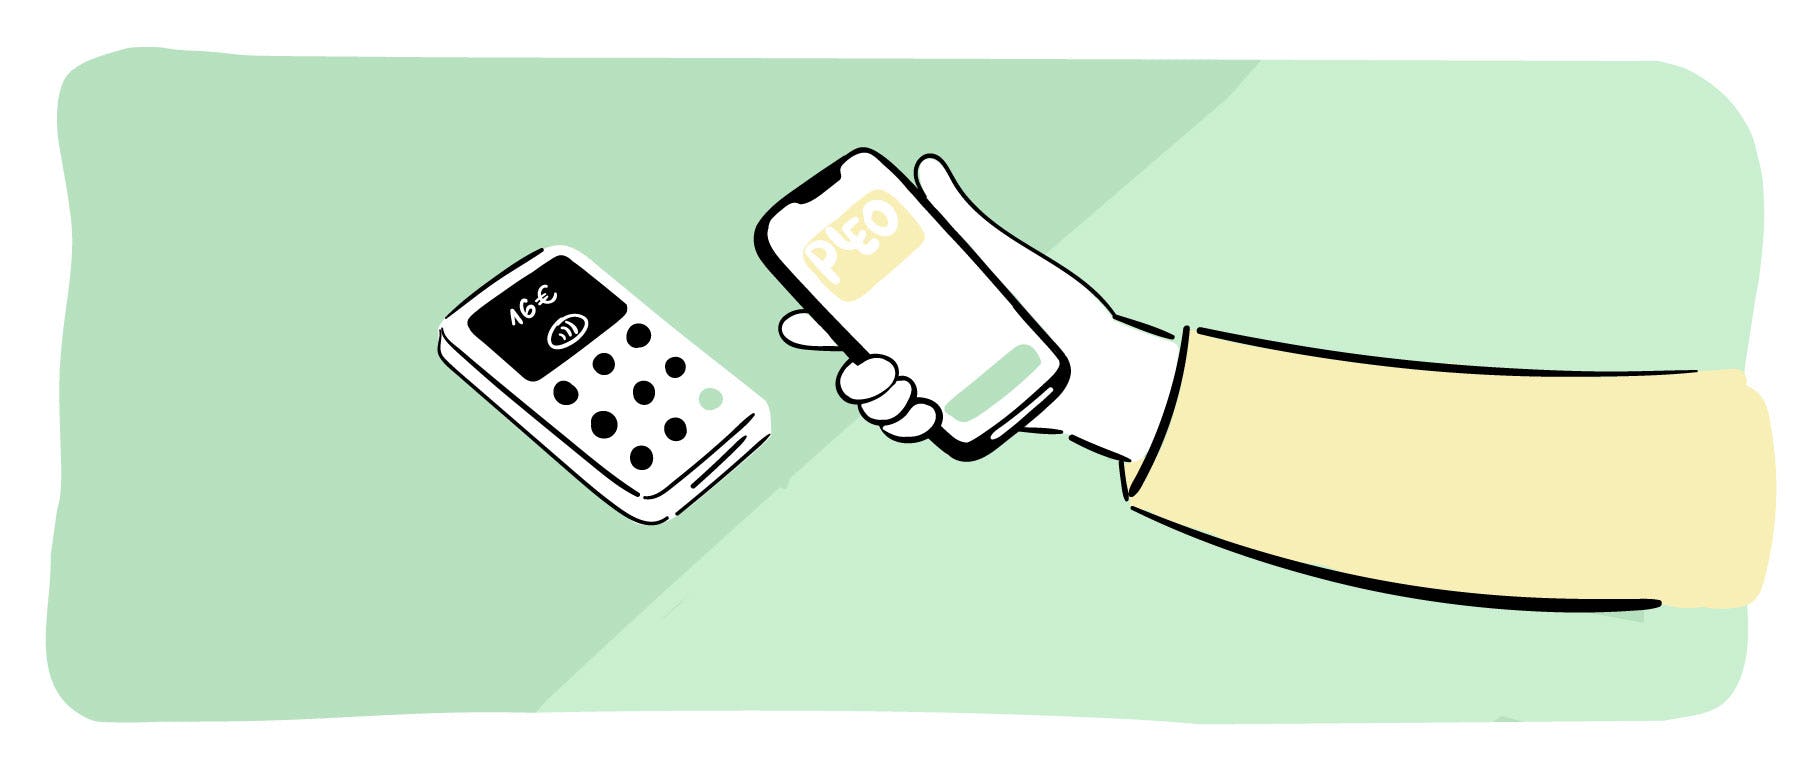 Kontaktlos bezahlen mit dem Smartphone